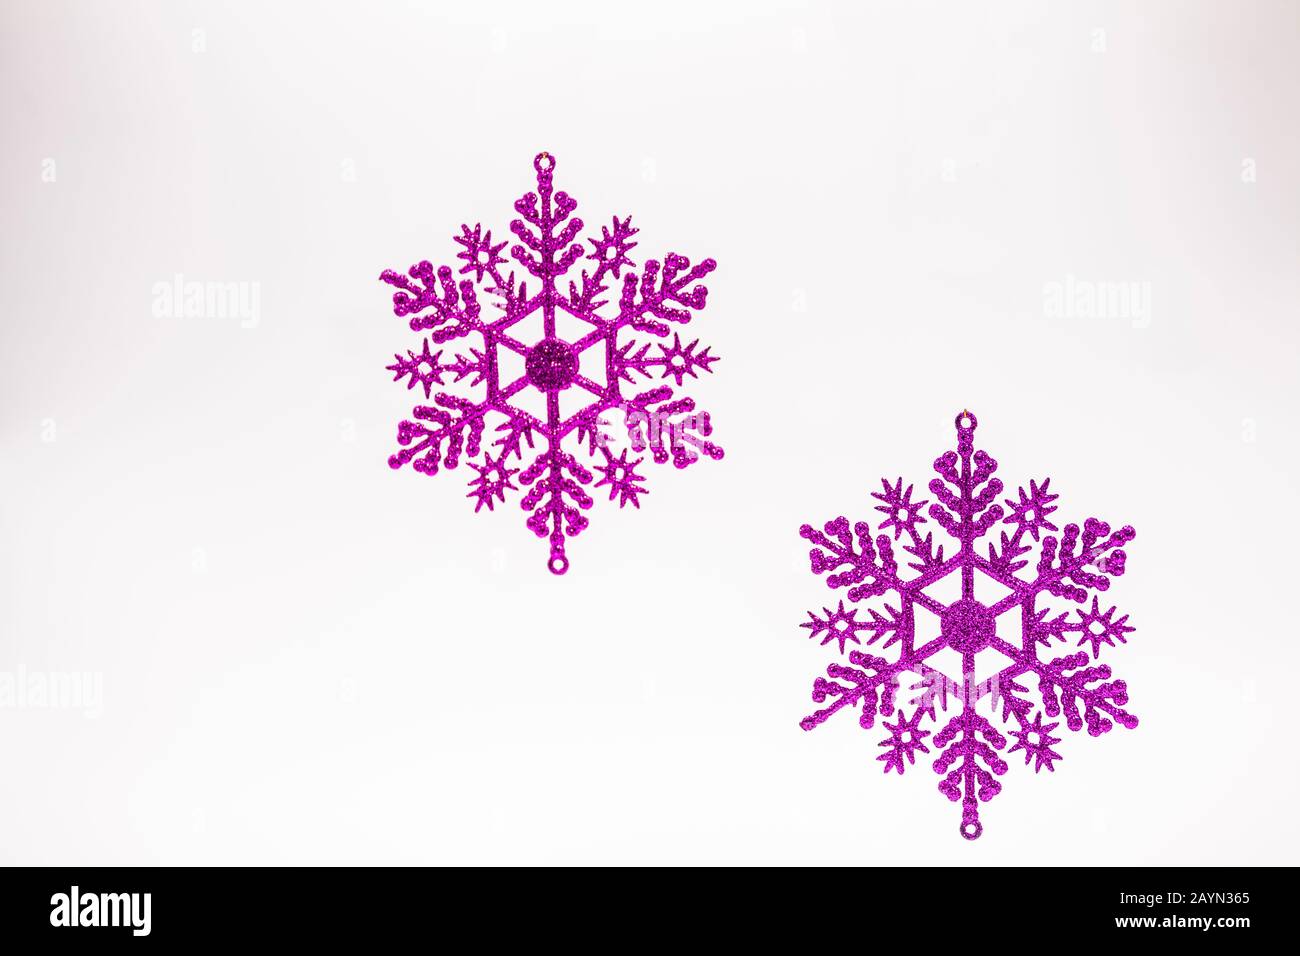 2 purple Christmas snowflakes on a white background Stock Photo